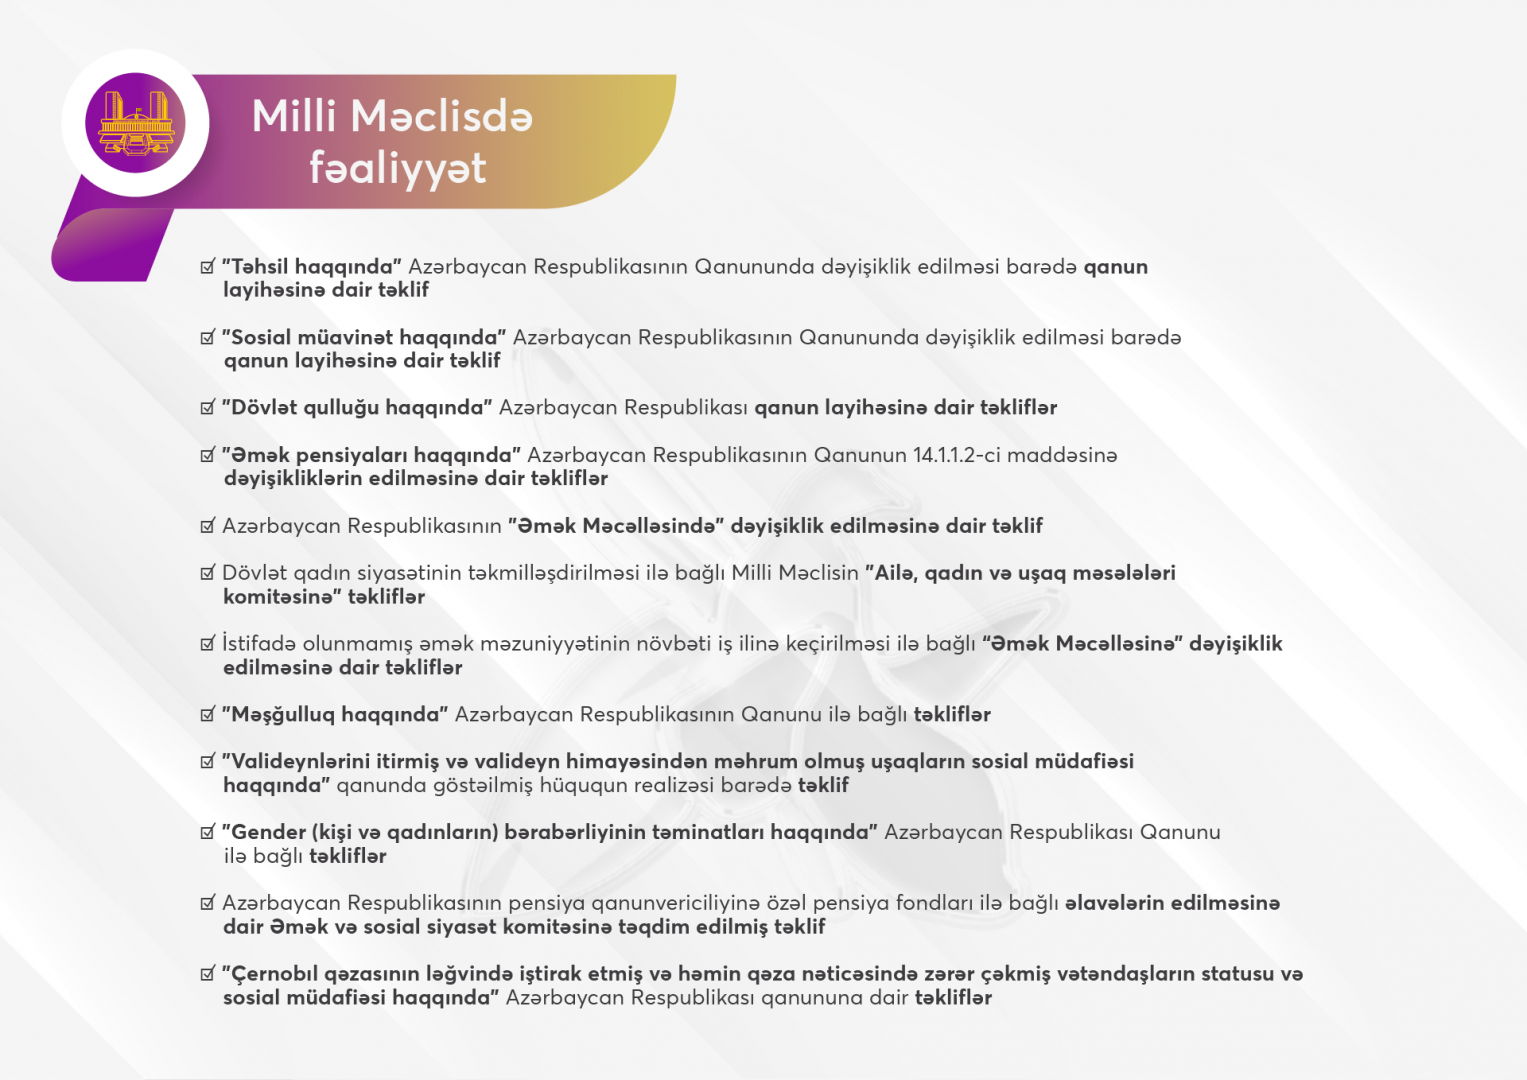 24 saylı Nizami 1-ci seçki dairəsindən Milli Məclisin deputatı seçilmiş Könül Nurullayevanın 2020-ci il üçün fəaliyyət hesabat-